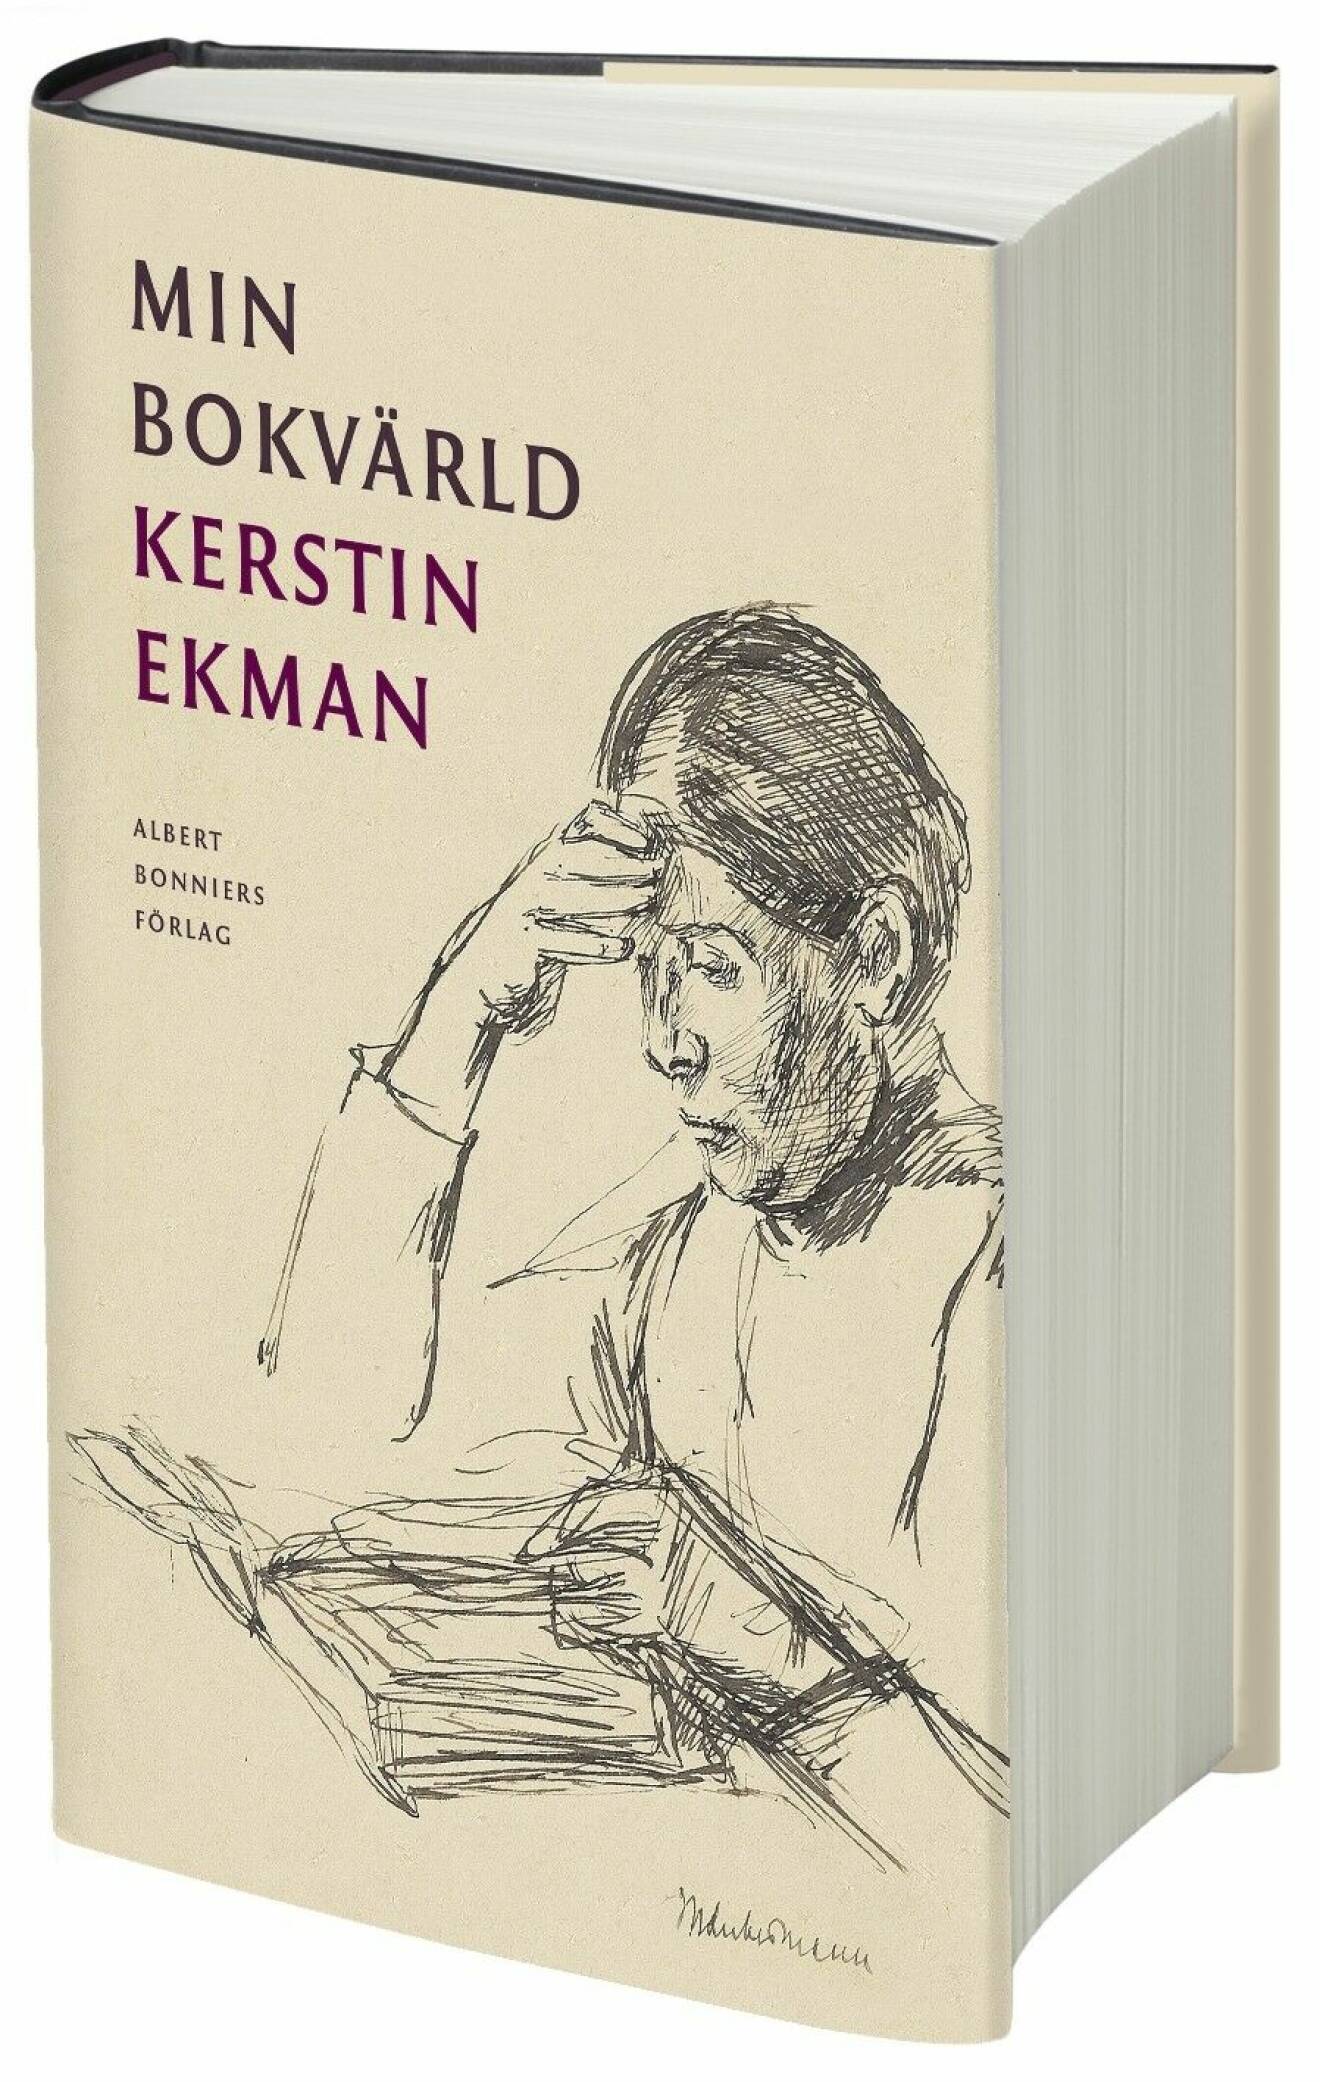 Min Bokvärld av Kerstin Ekman (Albert Bonniers förlag)